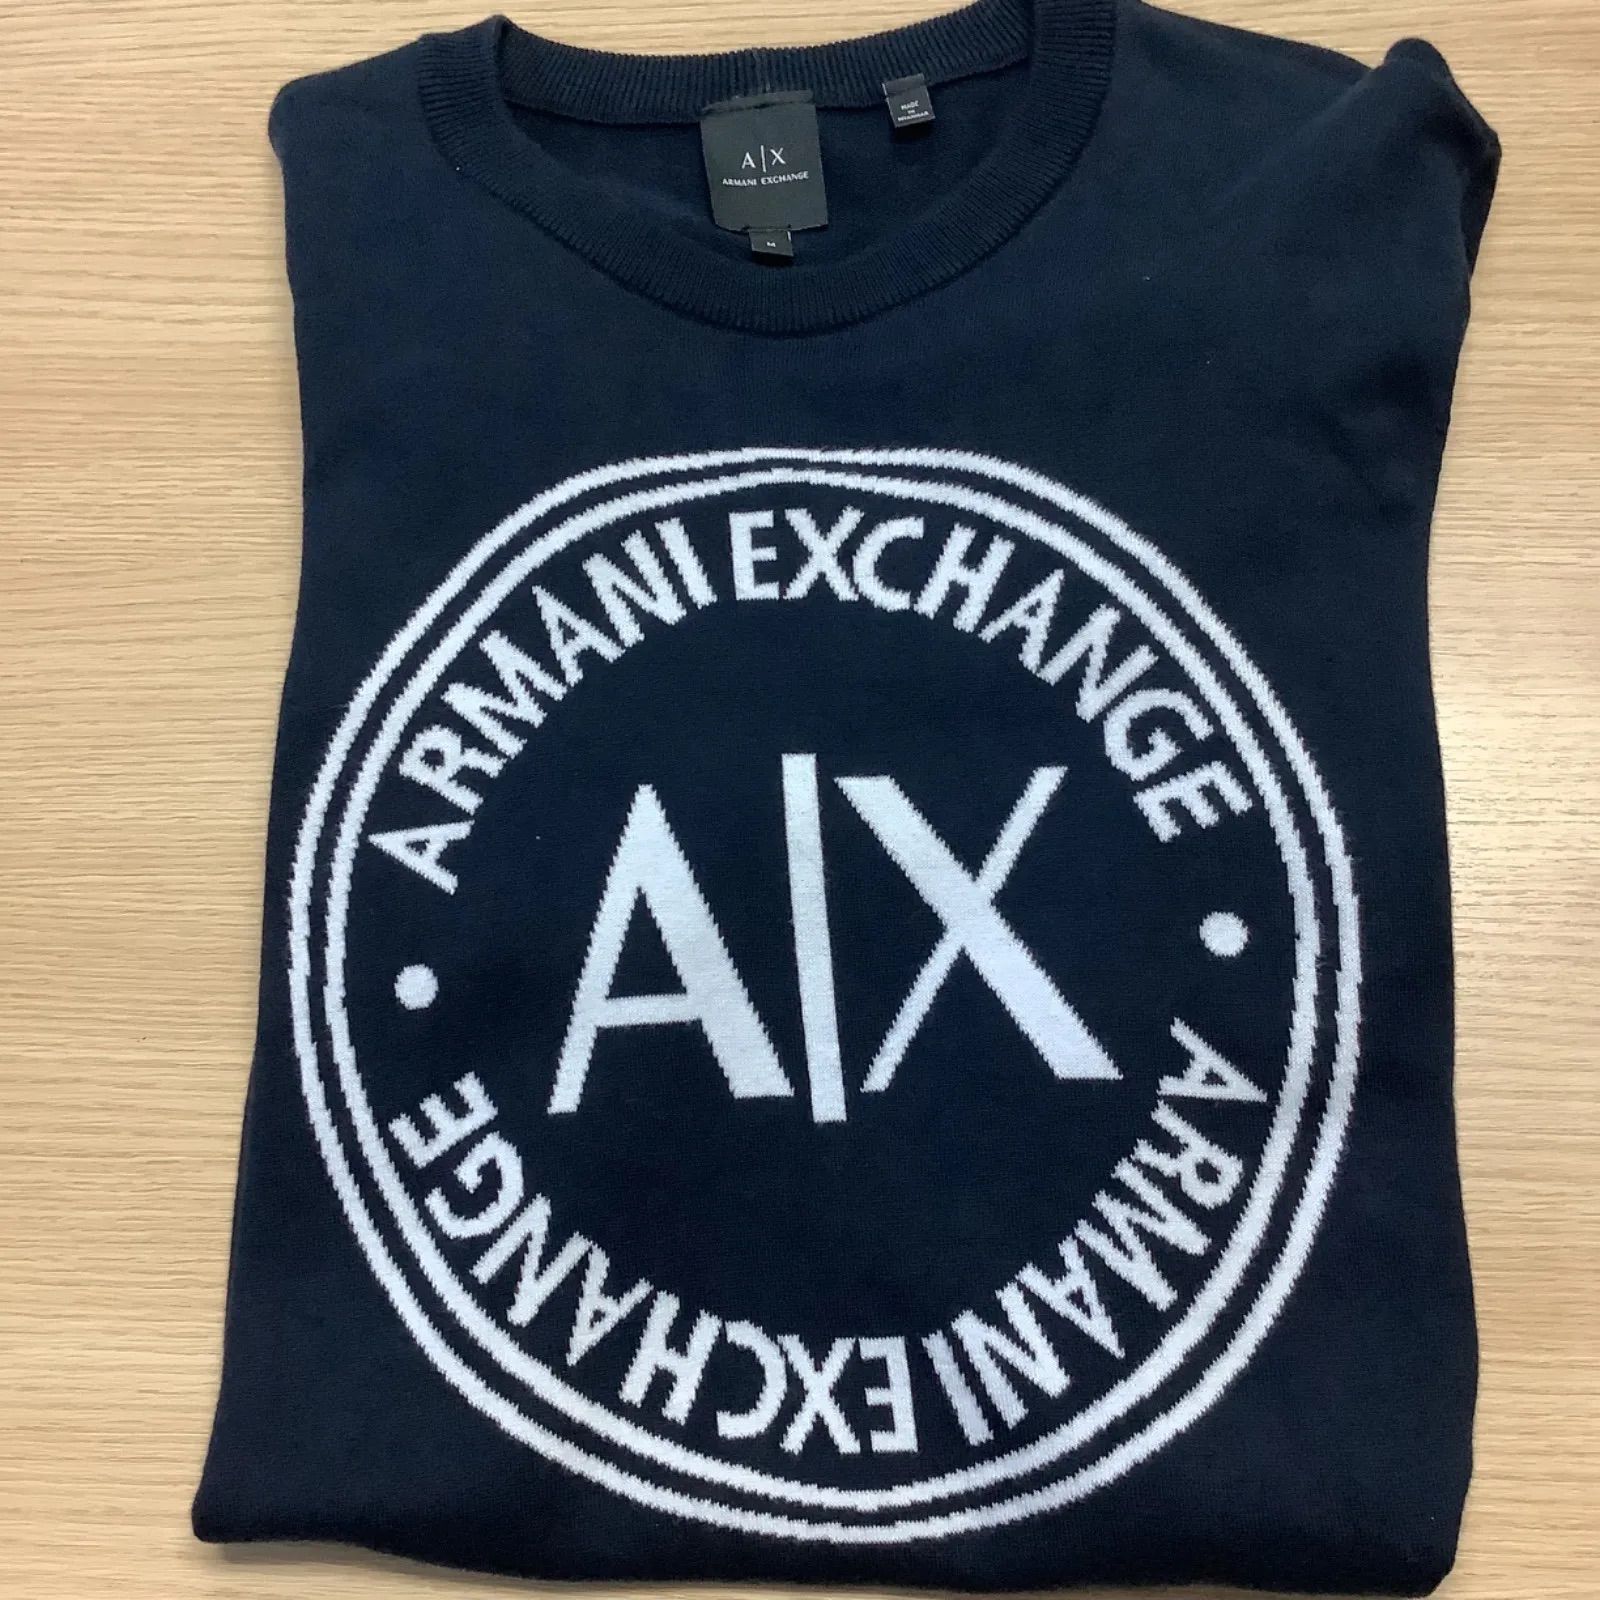 A/X アルマーニエクスチェンジ セーター Mサイズ